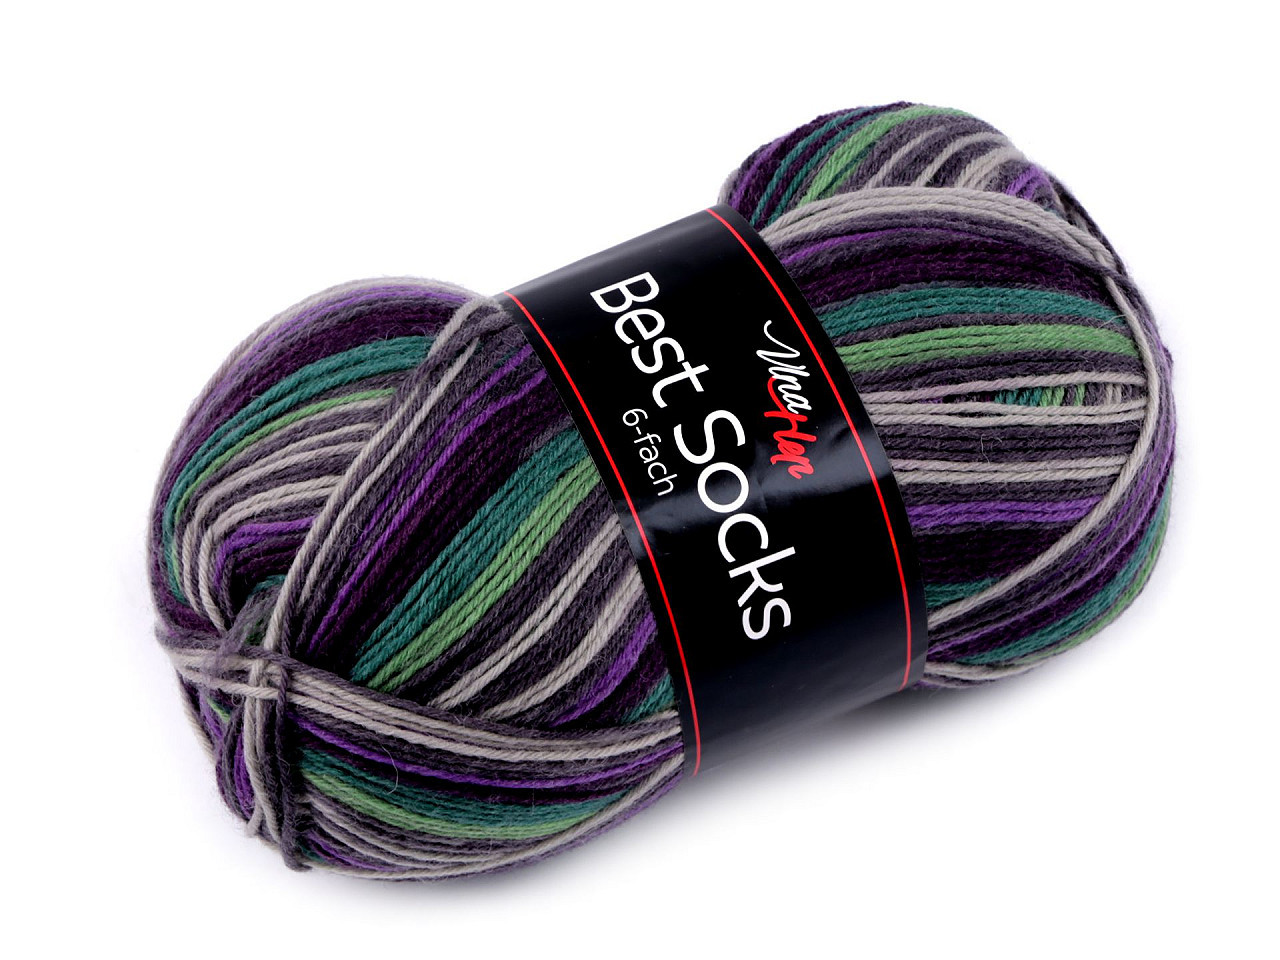 Pletací příze Best socks 150 g, barva 5 (7364) fialová tmavá šedá